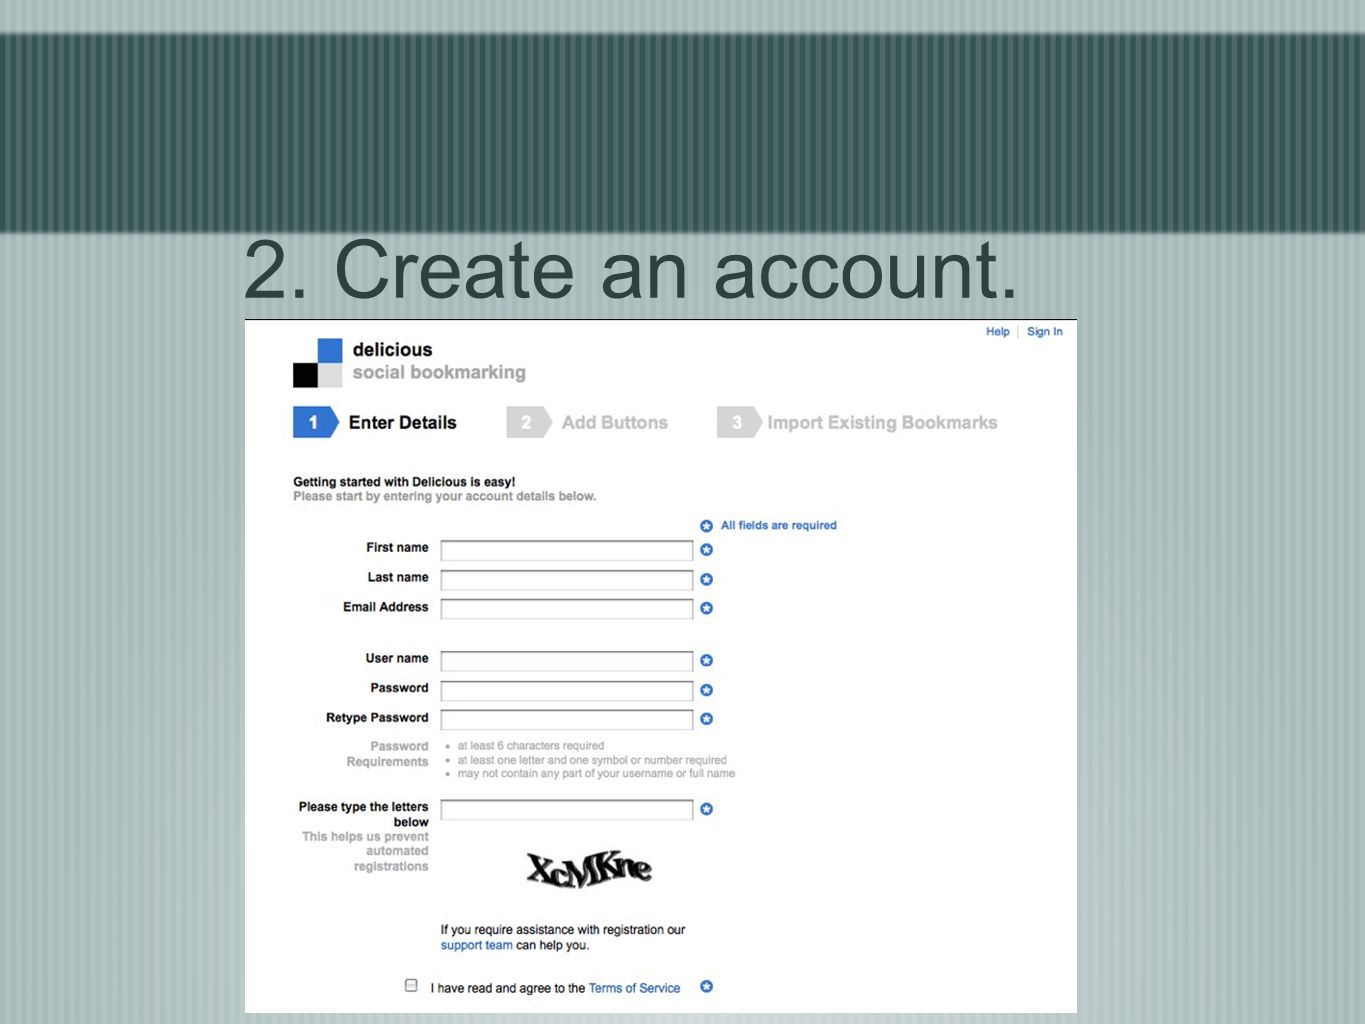 2. Create an account.